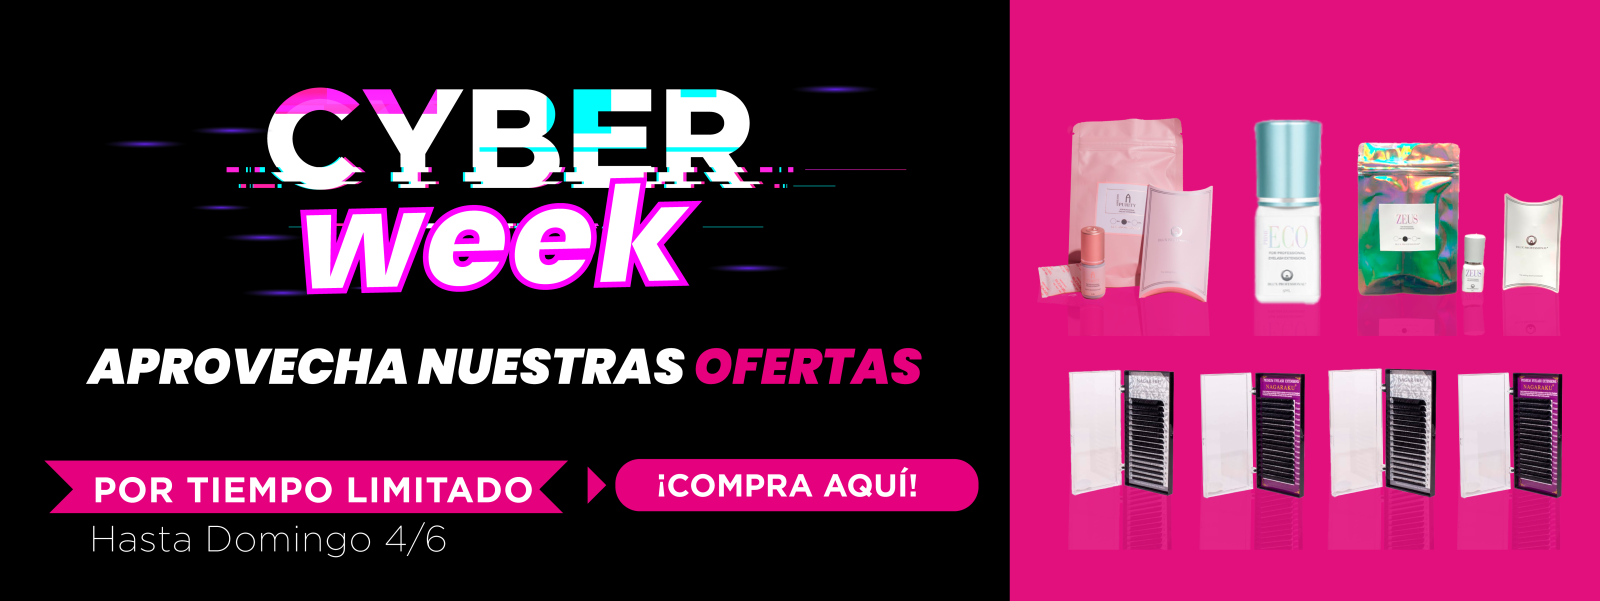 Cyberweek Pro